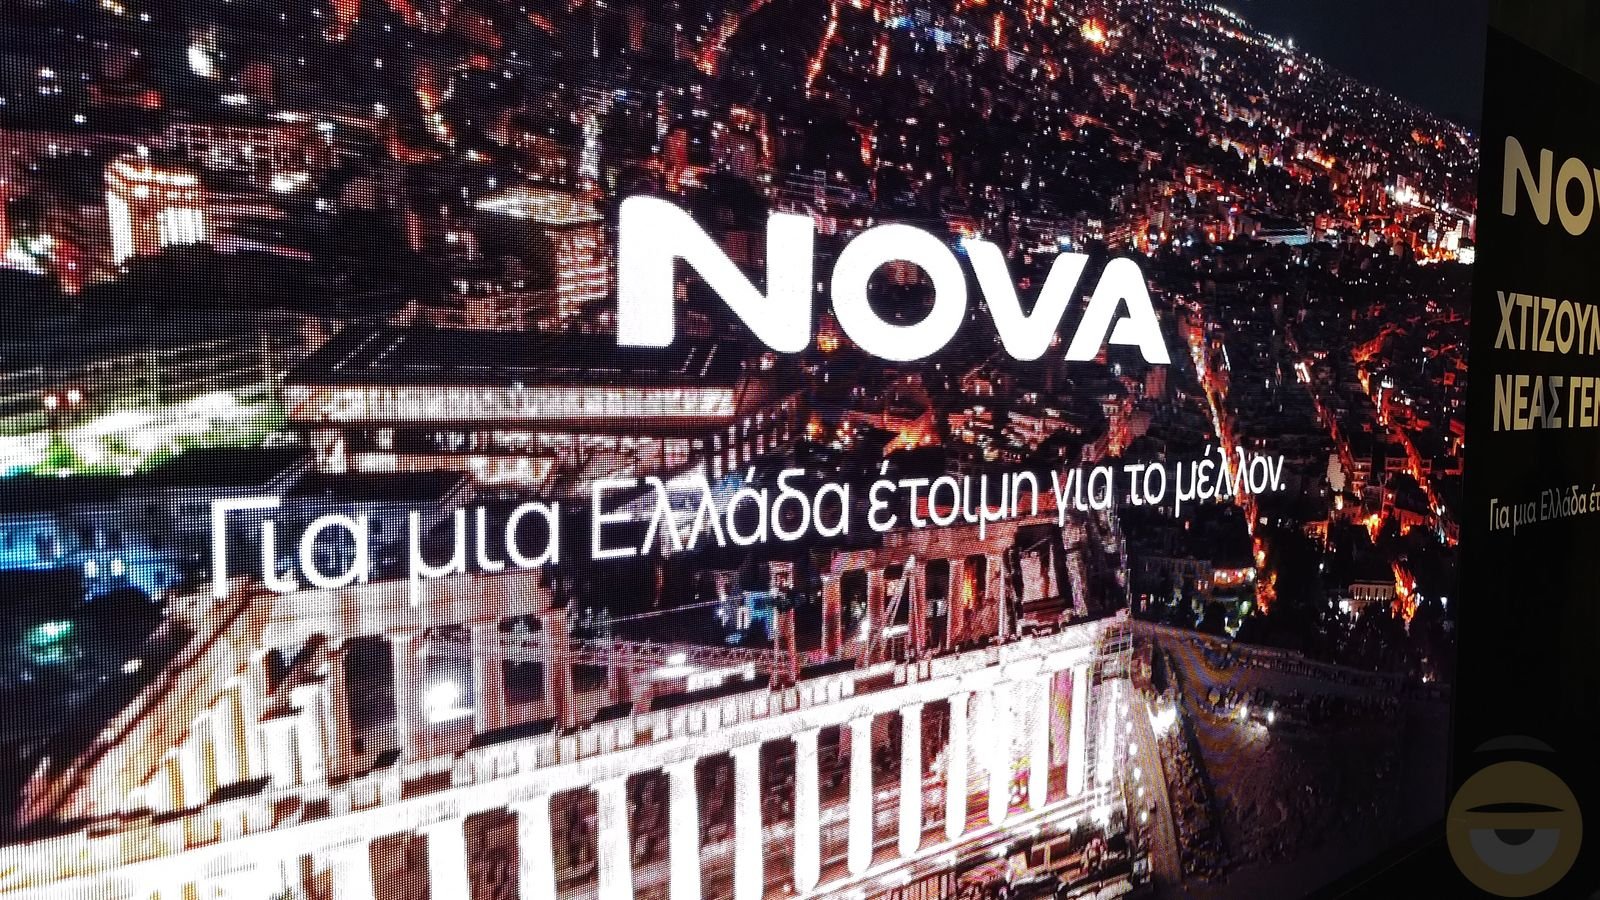 Nova: Ιδιόκτητο FTTH δίκτυο 10 Gigabit μέχρι το 2027 και εμπορικά πακέτα μέχρι 1 Gbps το Νοέμβριο